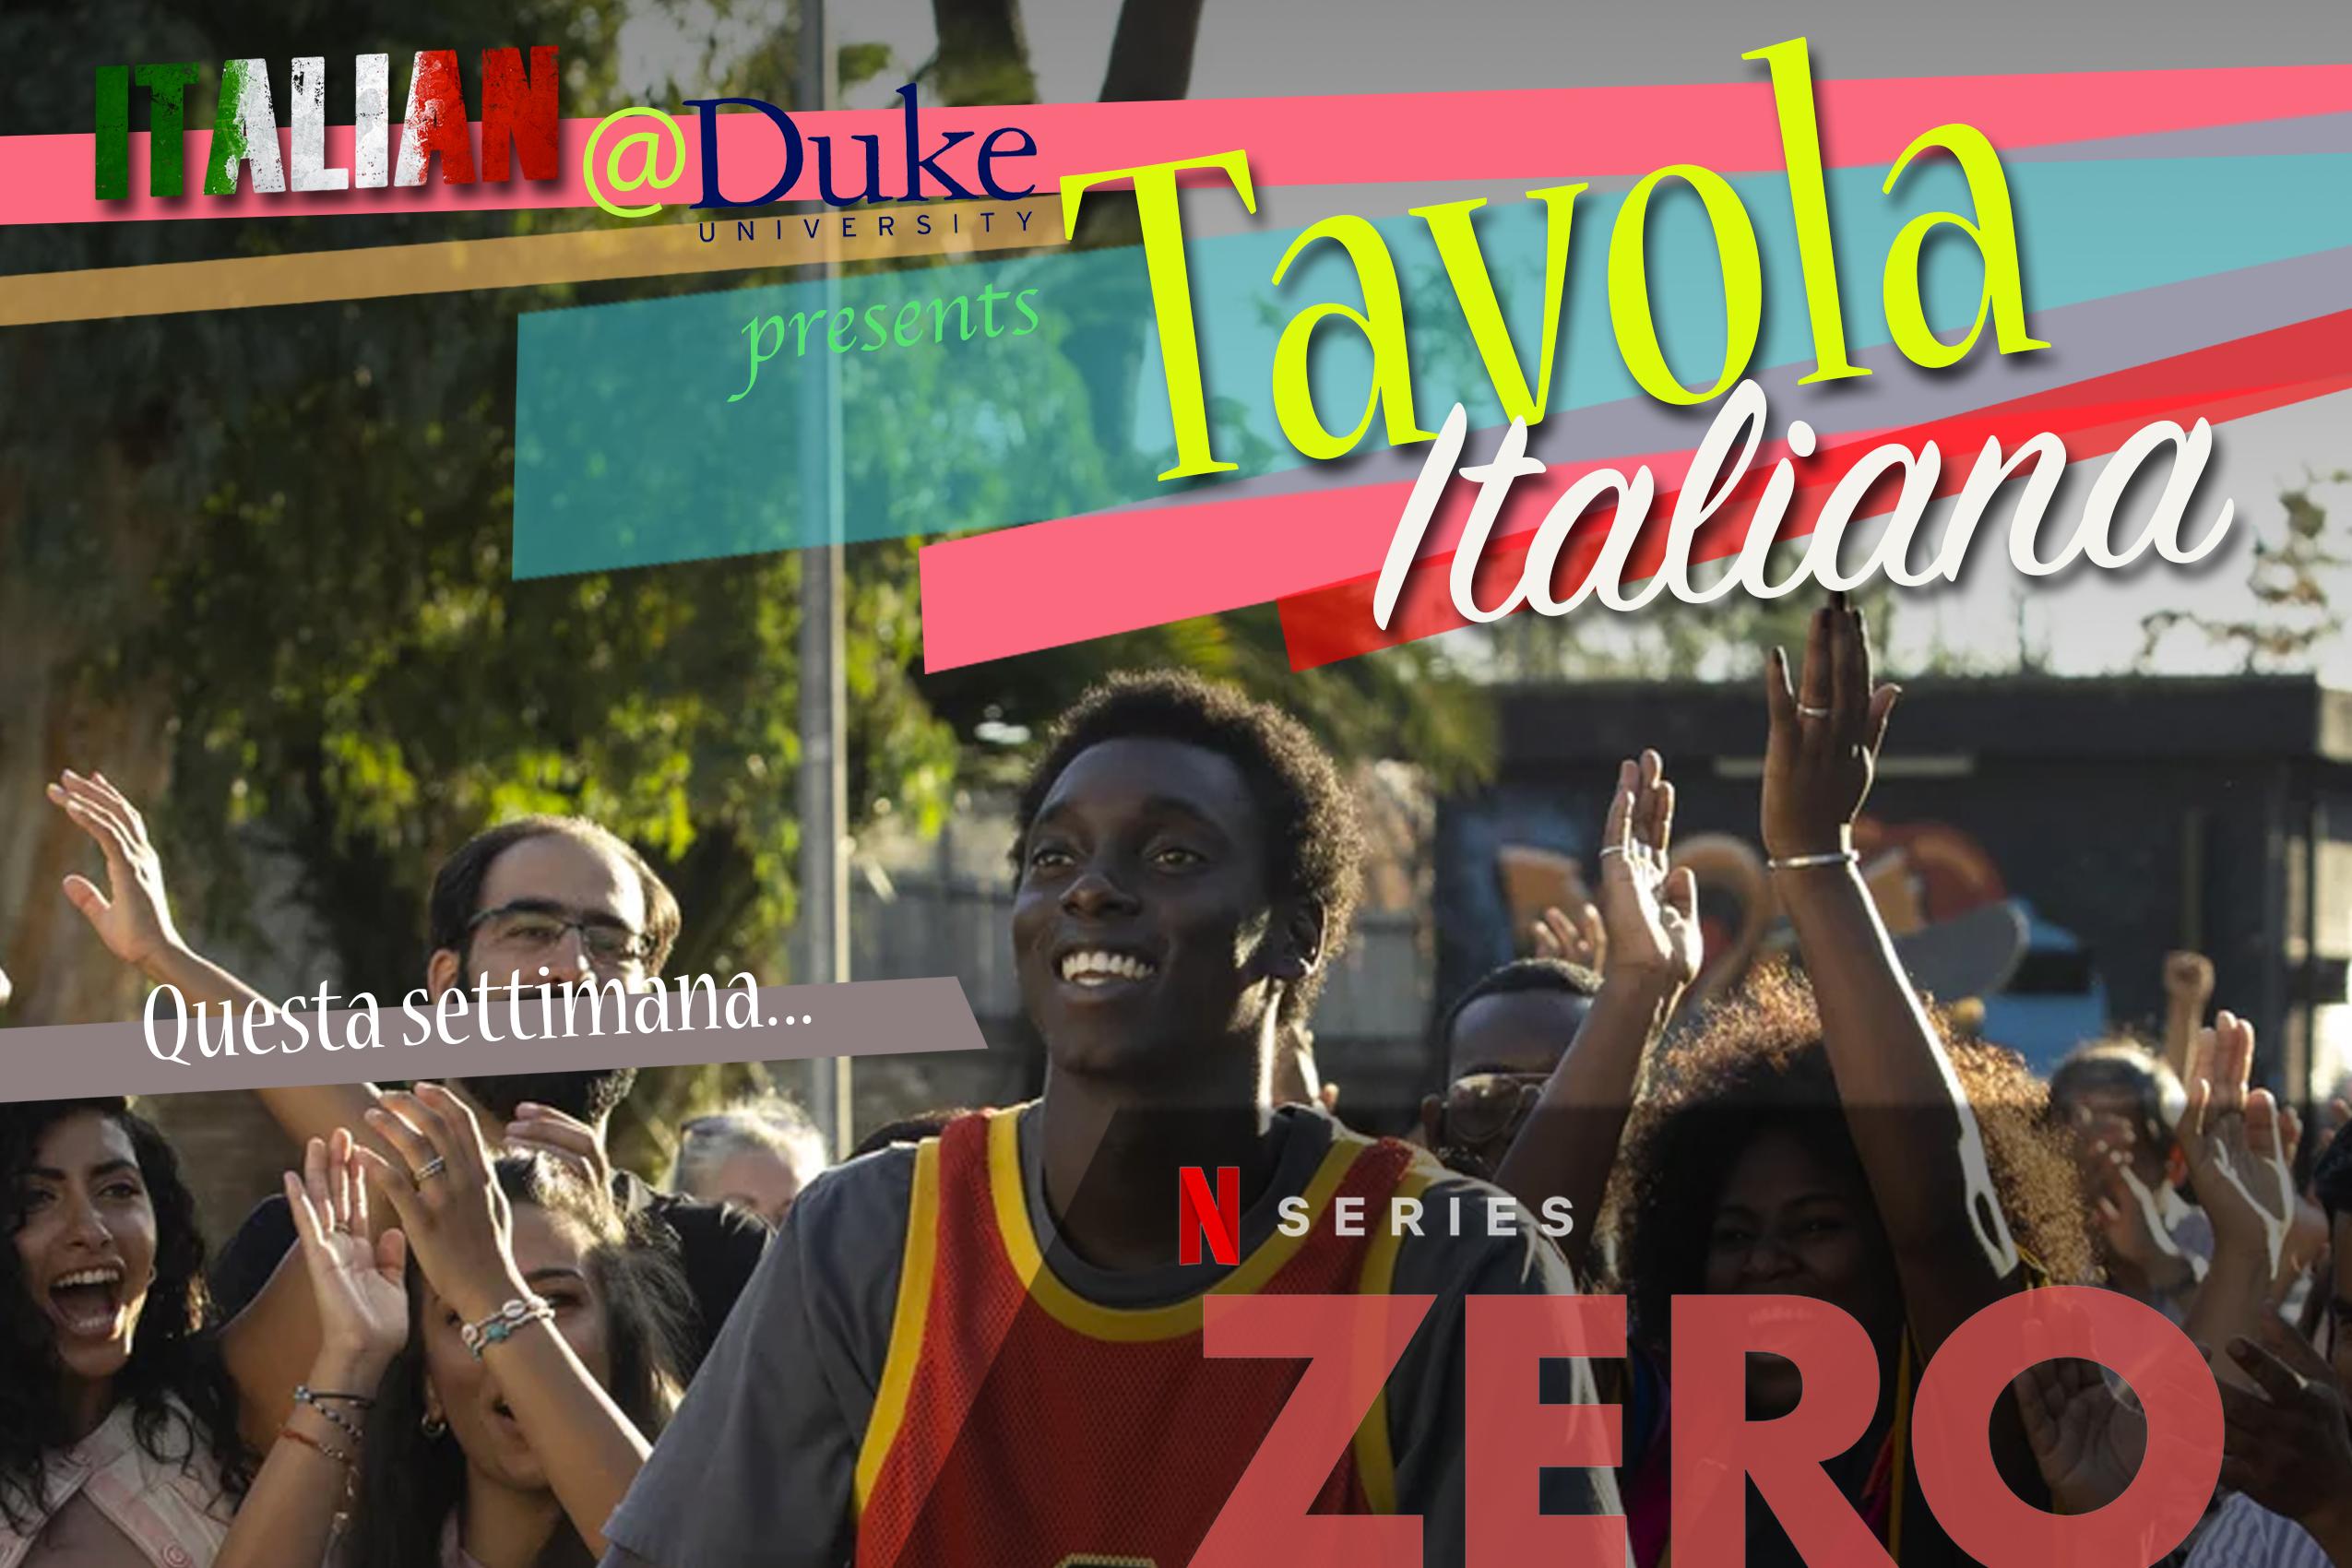 Tavola Italiana logo and an image from Netflix show Zero.